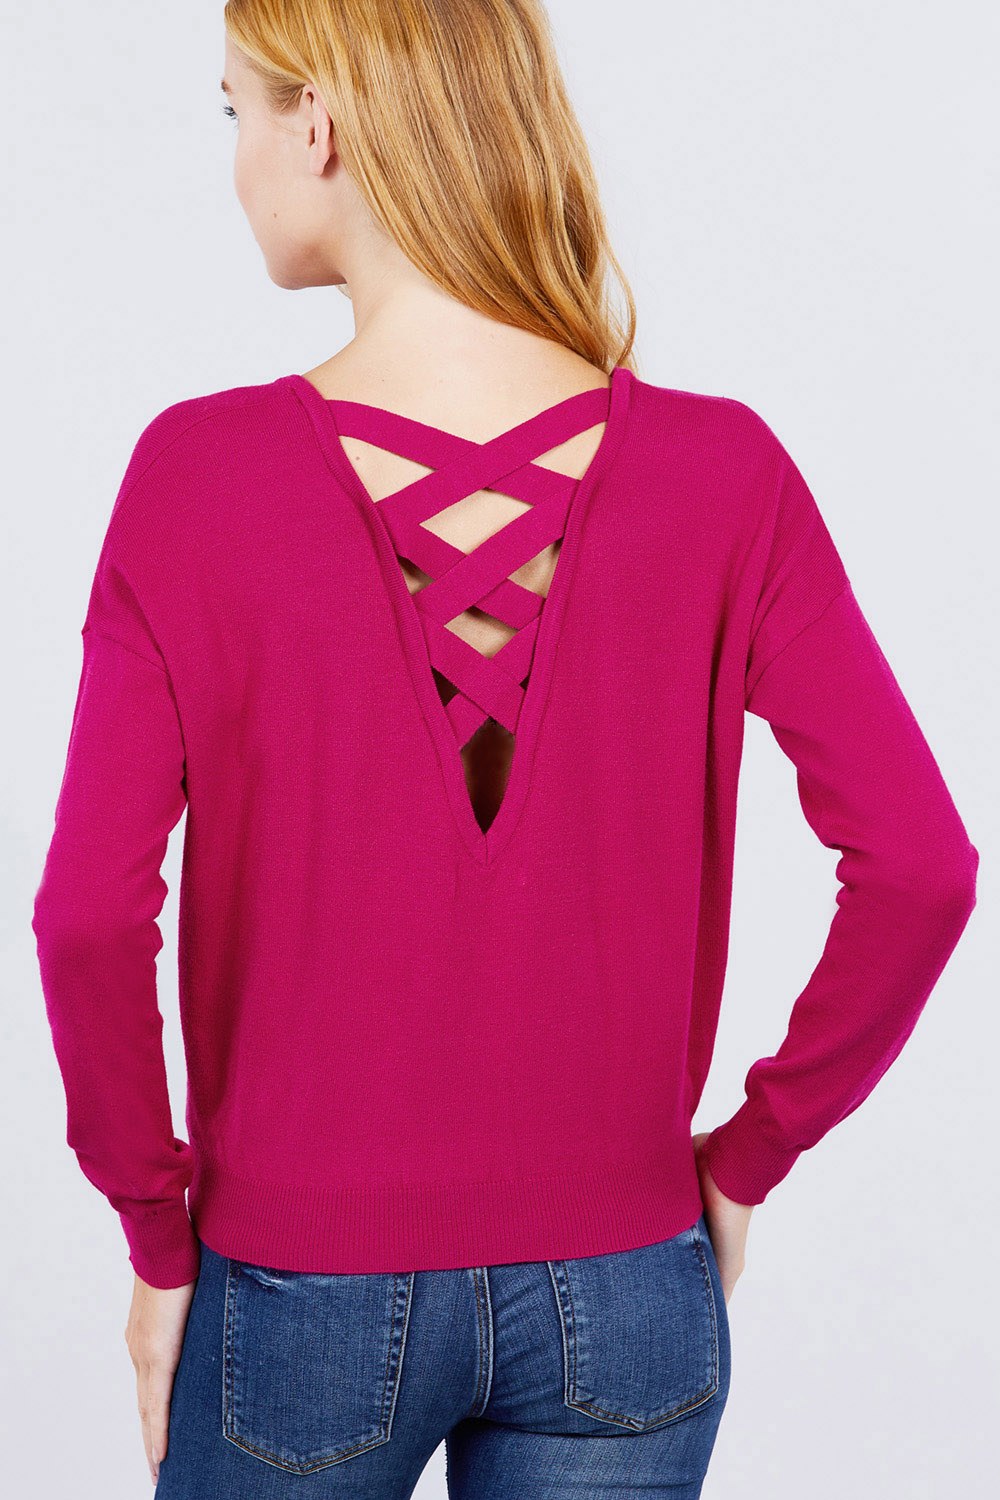 V-neck Back Cross Sweater